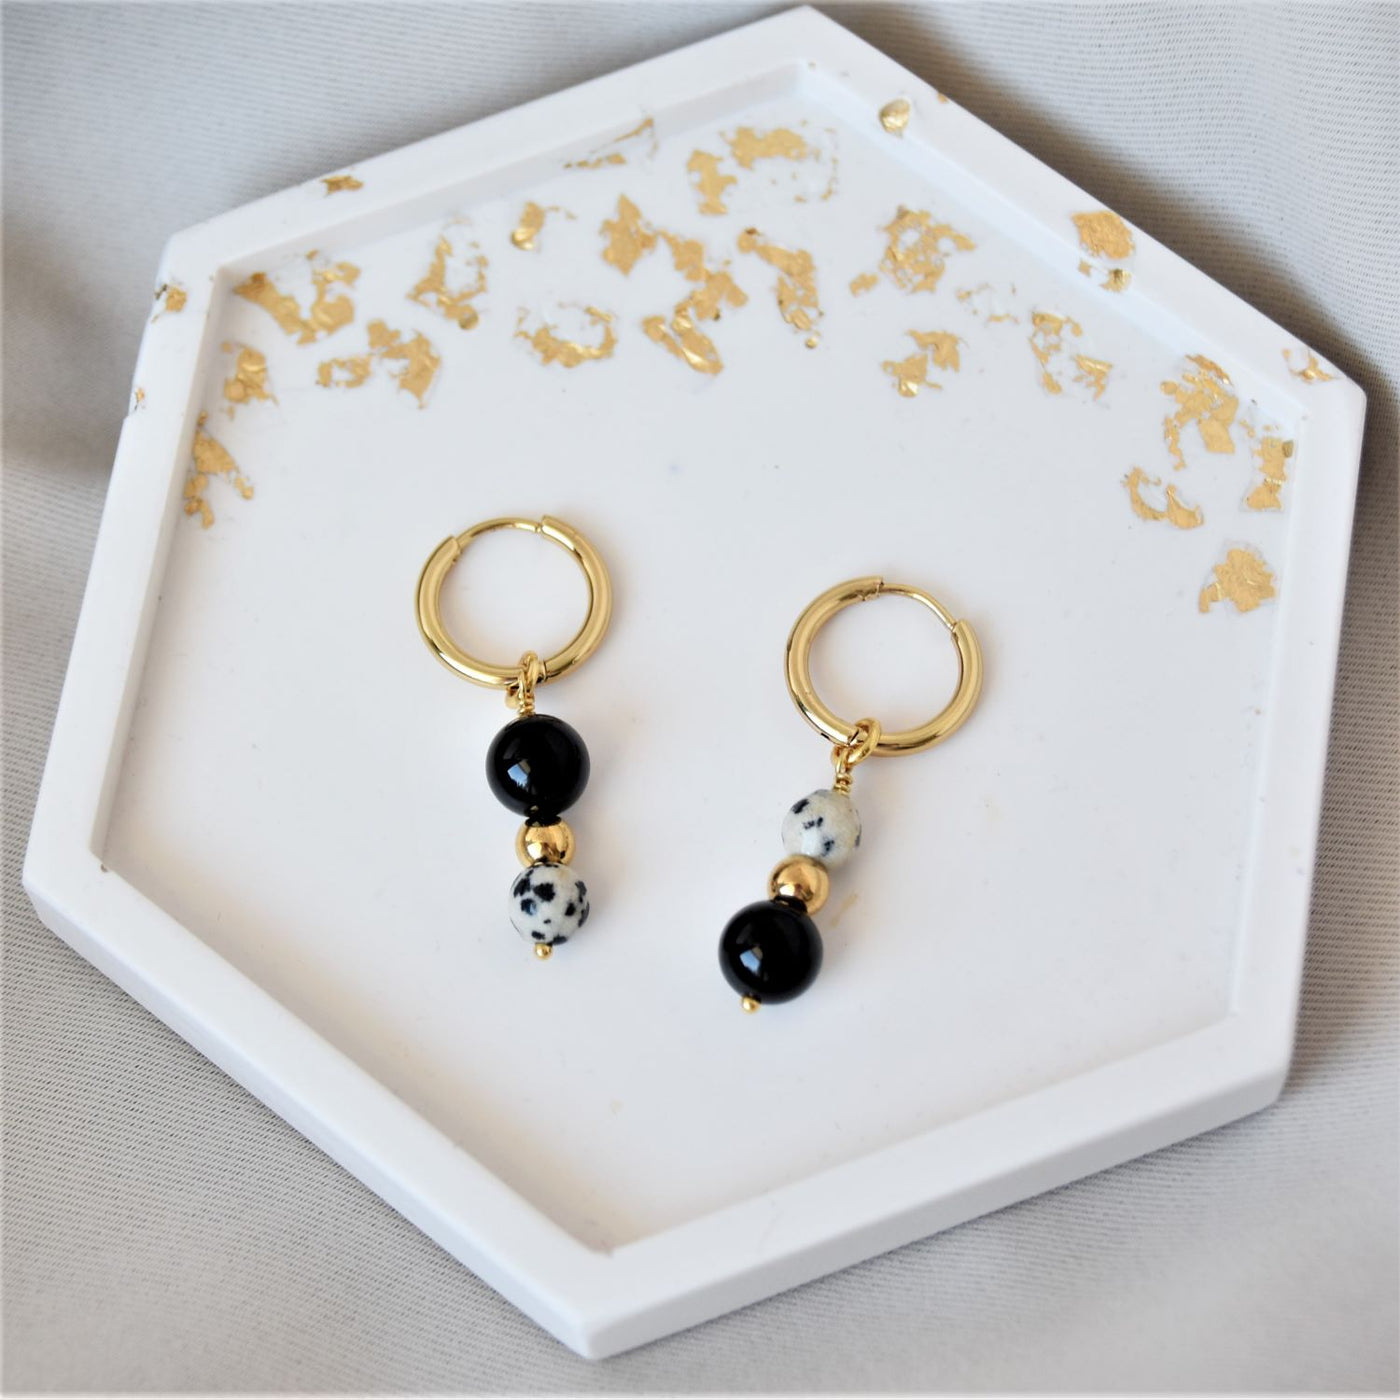 Dalmation jasper and black agate earrings